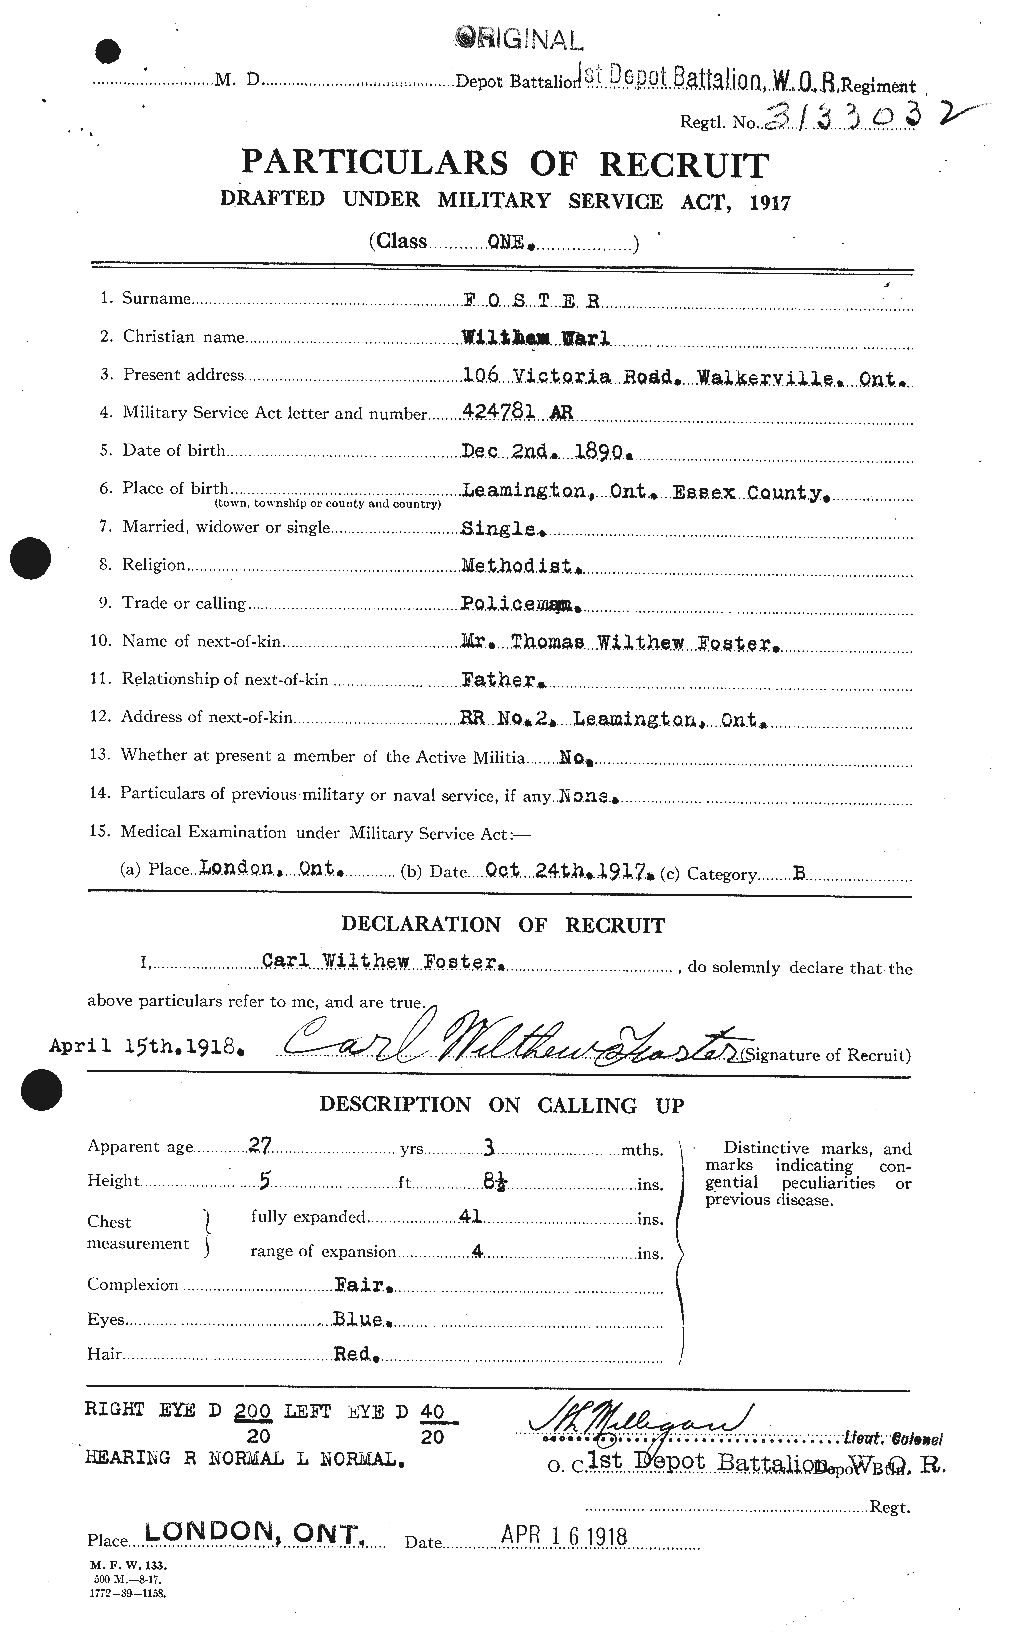 Dossiers du Personnel de la Première Guerre mondiale - CEC 328777a